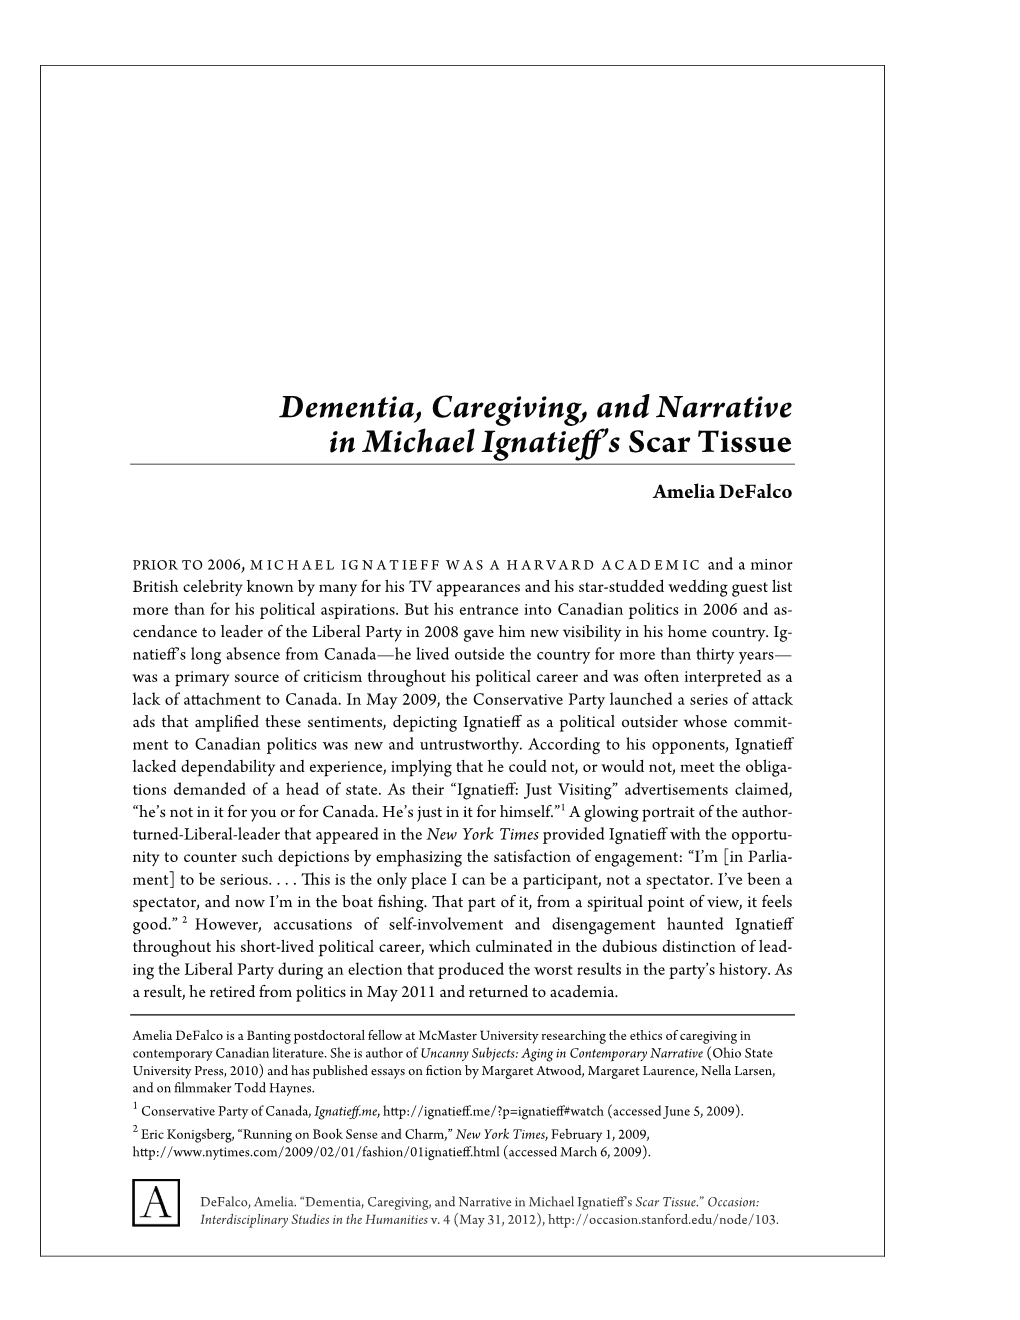 Dementia, Caregiving, and Narrative in Michael Ignatieff's Scar Tissue